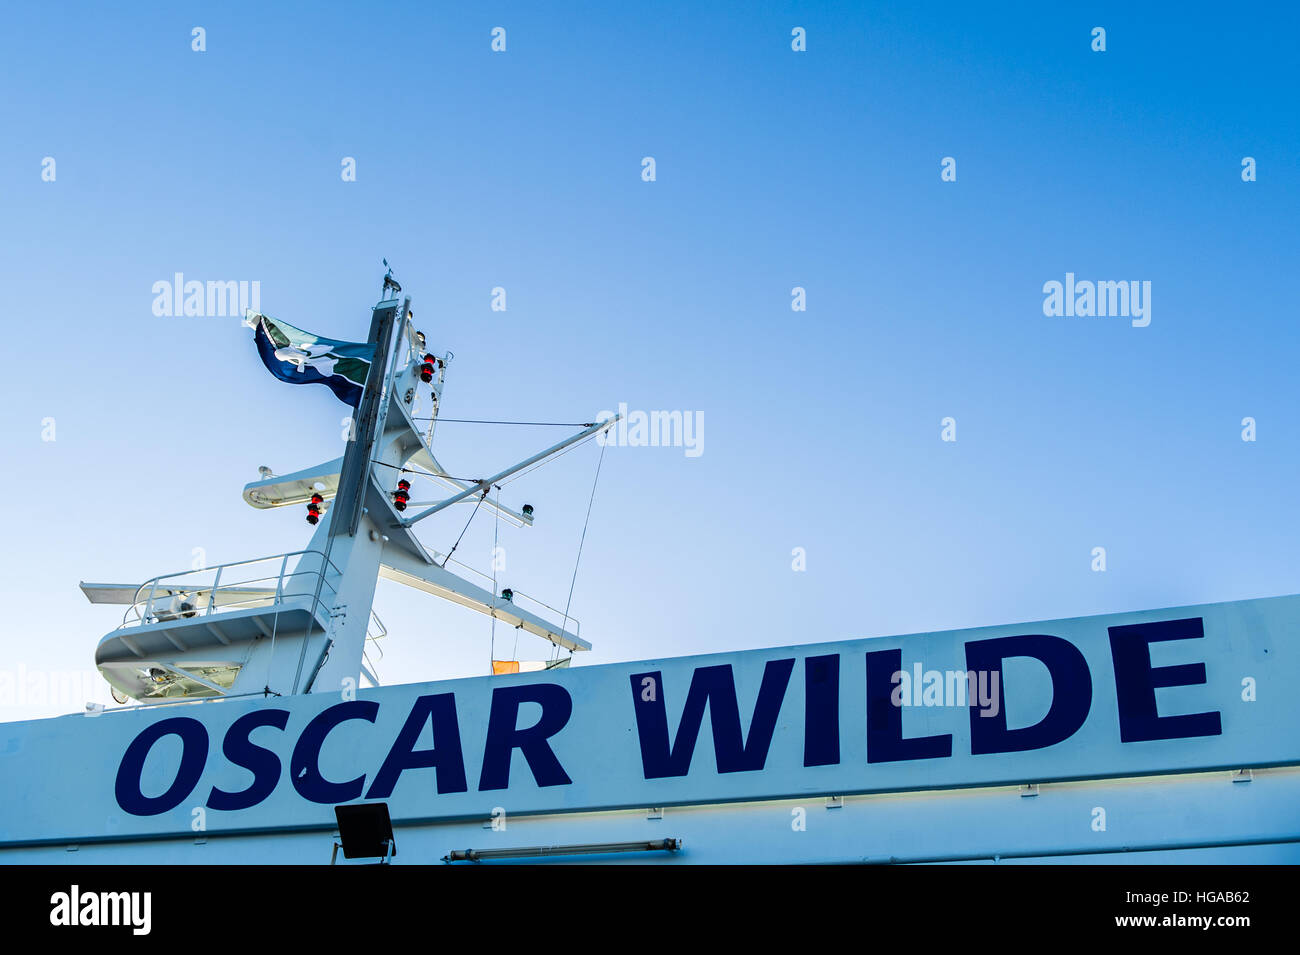 Der Name des Autos mit der Fähre "Oscar Wilde" auf dem Schiff mit dem Funk und Radar-Turm an einem klaren, blauen Tag mit textfreiraum geschrieben. Stockfoto